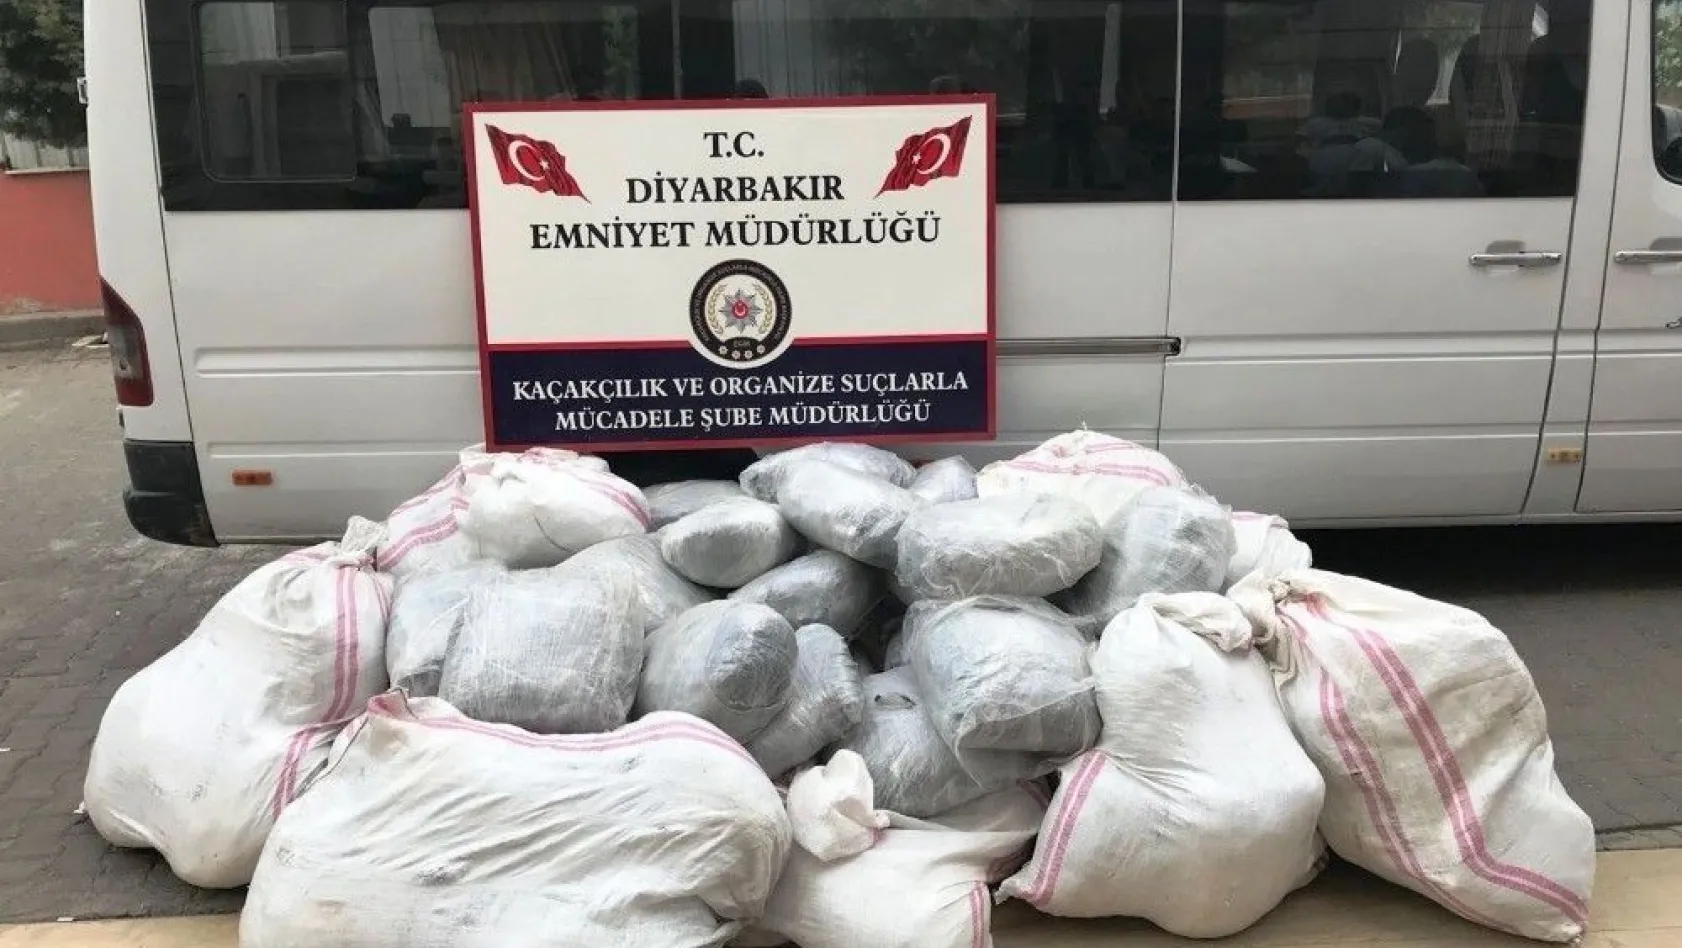 Diyarbakır'da 1 tondan fazla uyuşturucu ele geçirildi
